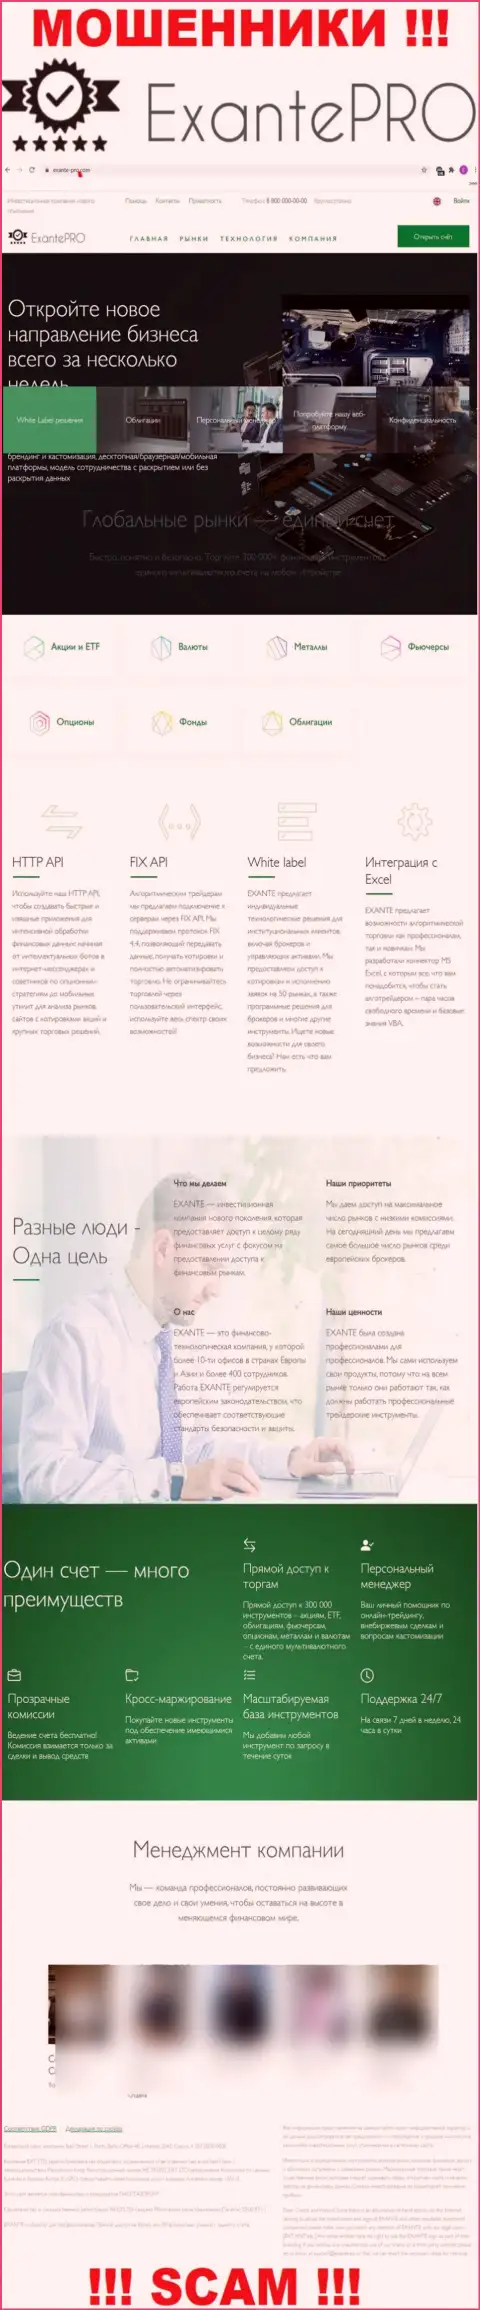 Обзор официального веб-портала мошенников ЕХТ ЛТД